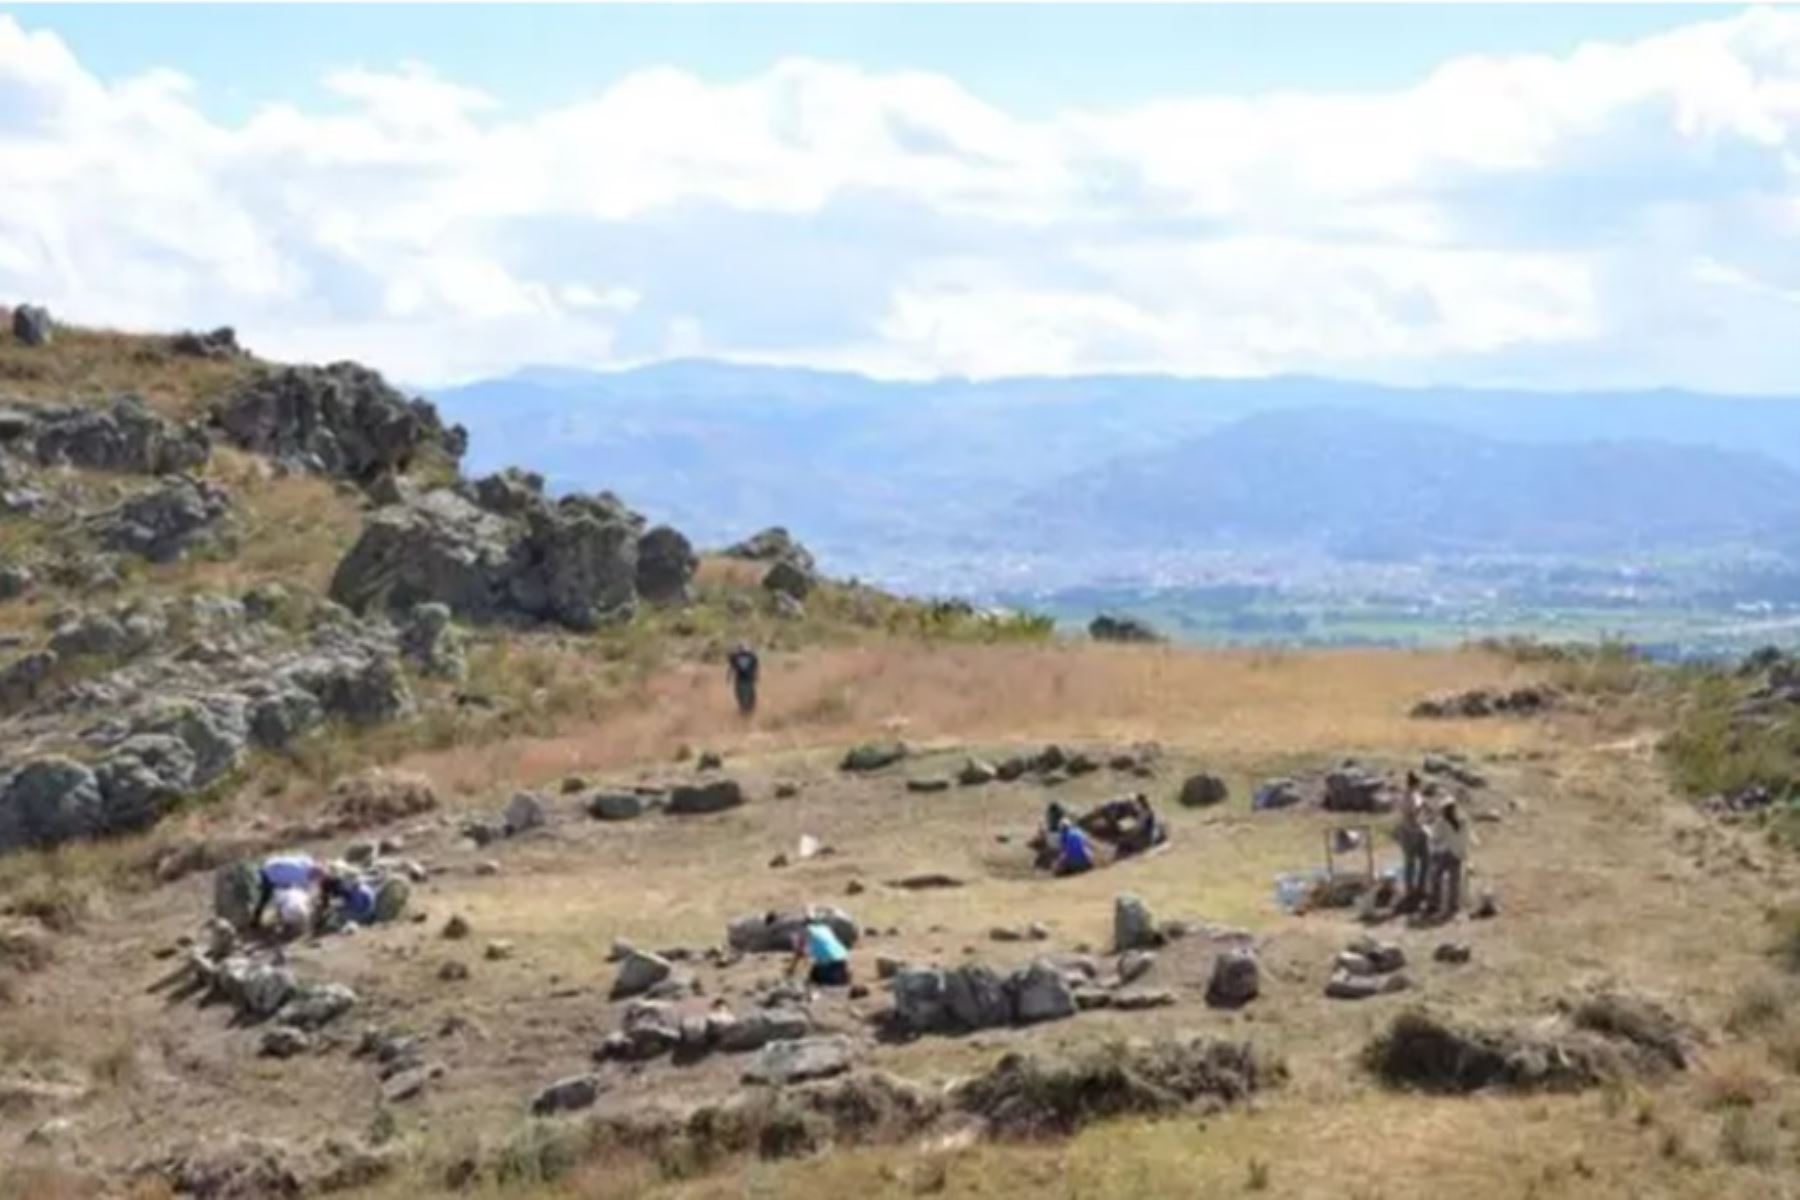 Una de las primeras plazas circulares de los Andes sudamericanos, que muestra una arquitectura megalítica monumental, ha sido descubierta en la región Cajamarca, en la sierra norte del Perú. FOTO: Jason Toohey